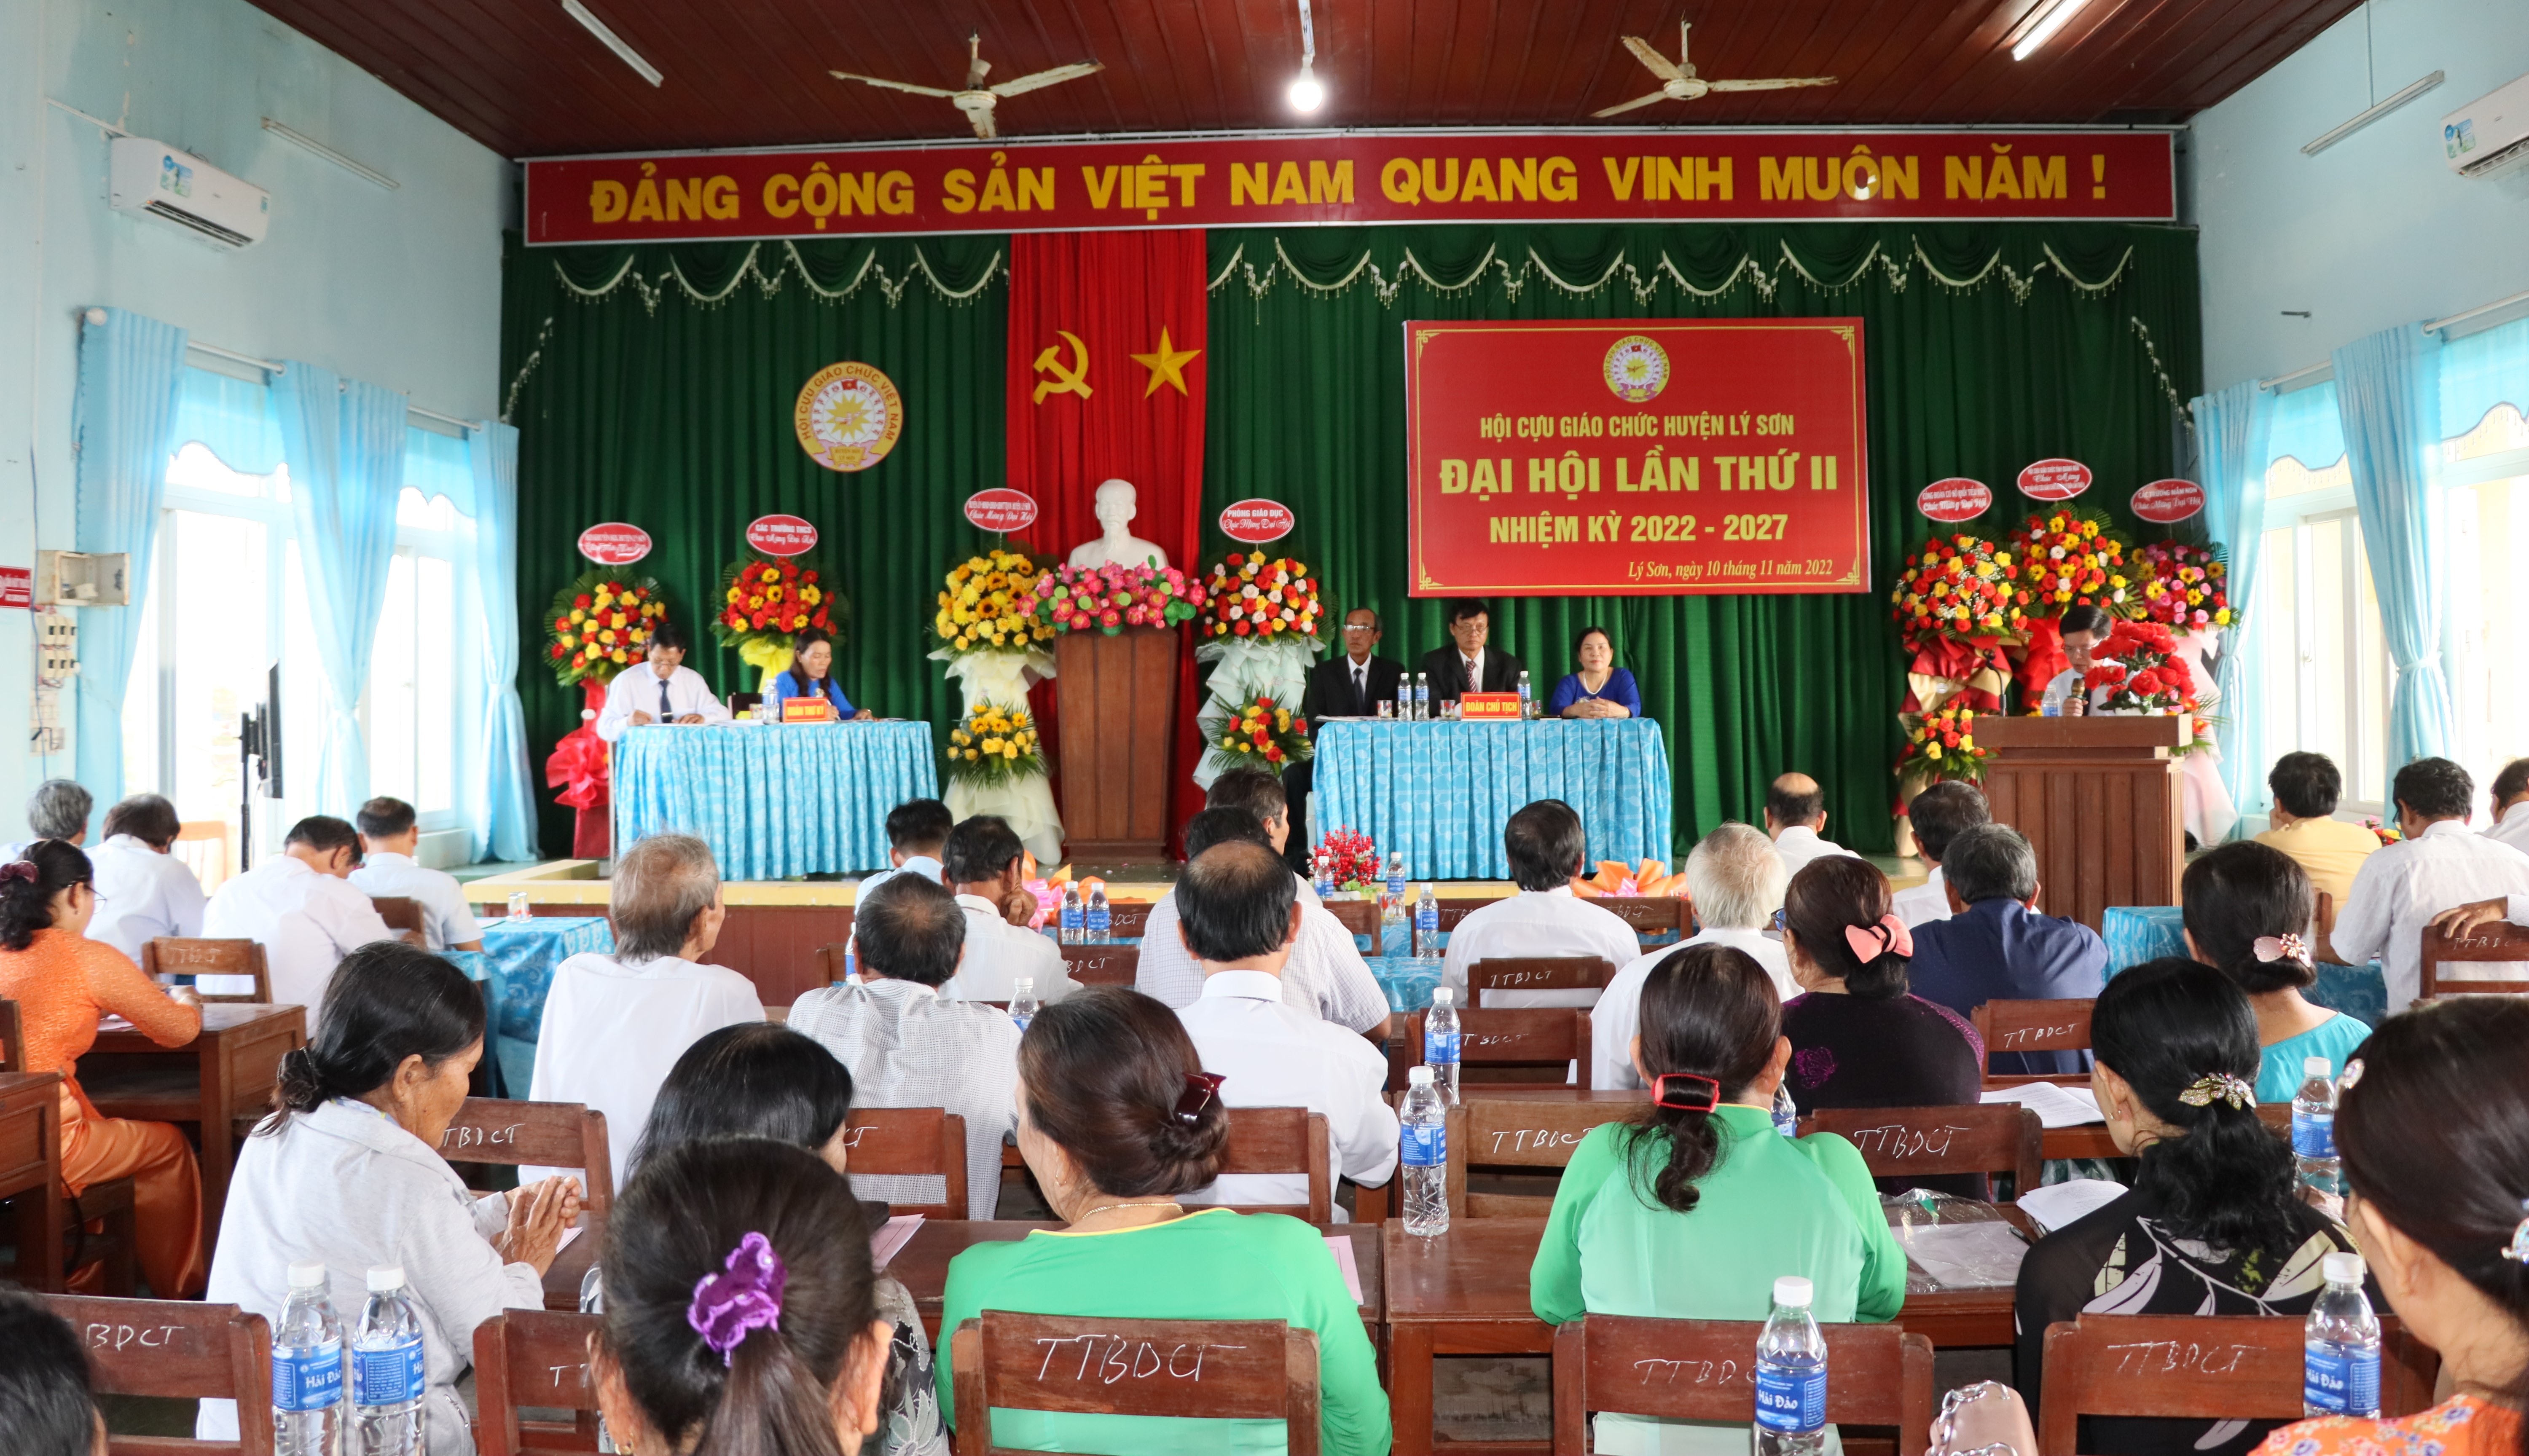 Đại hội Hội Cựu giáo chức huyện Lý Sơn lần thứ II